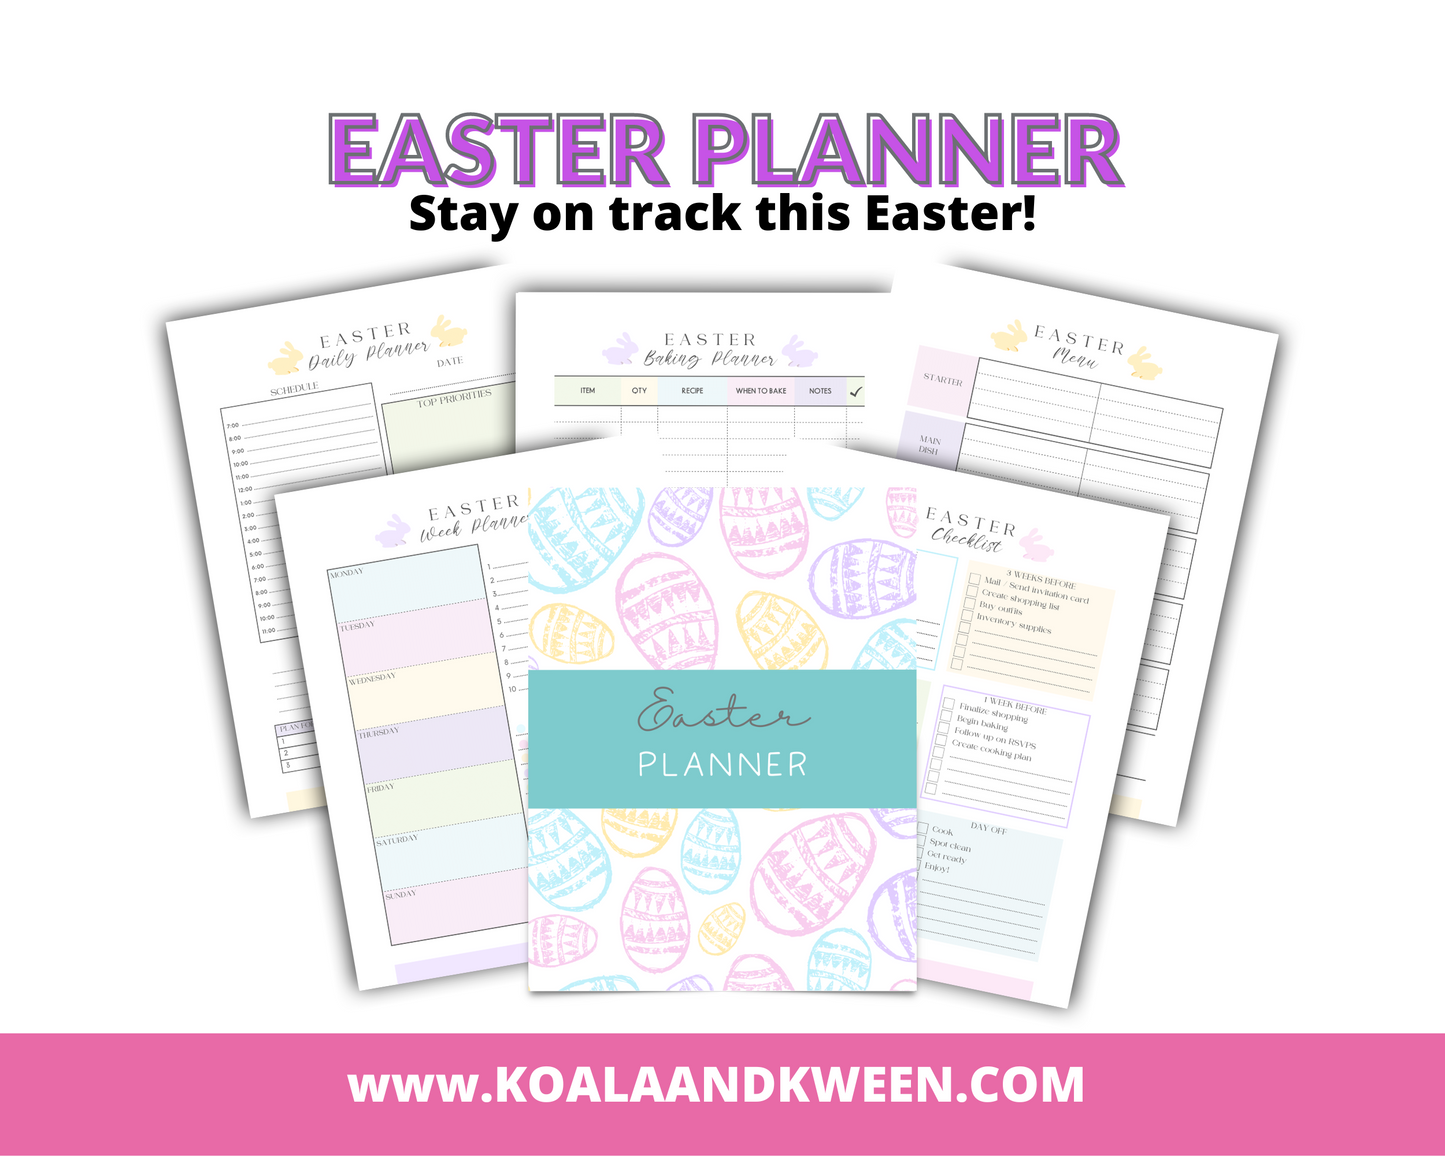 Free Easter Planner (Meals, Activities, Calendar, Guests, Treats)